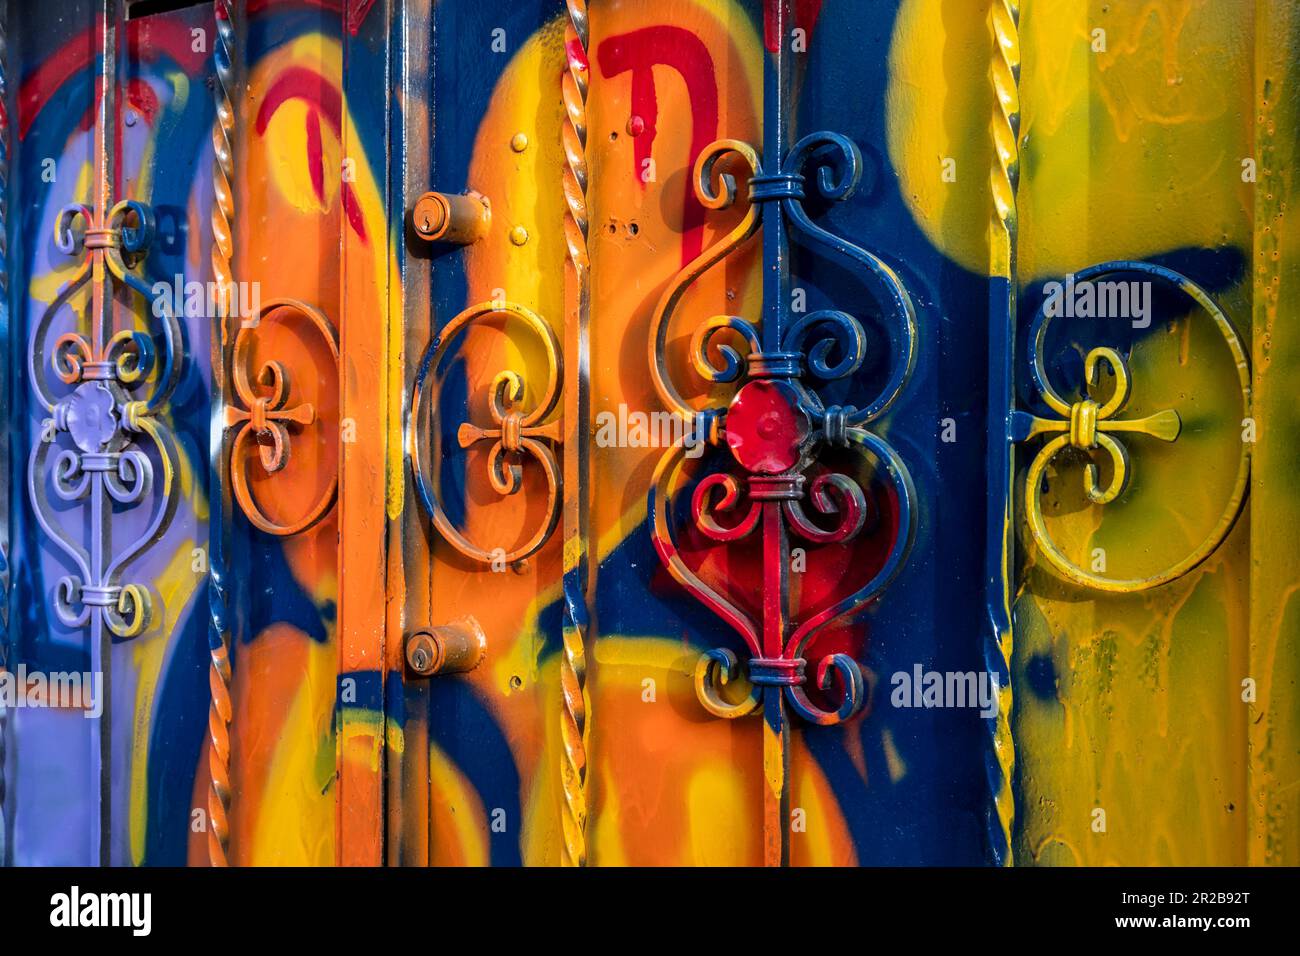 Die Tür des Hauses war mit den Farben und Farben von Graffiti-Künstlern geschmiert. Lebendige Farben. Stockfoto